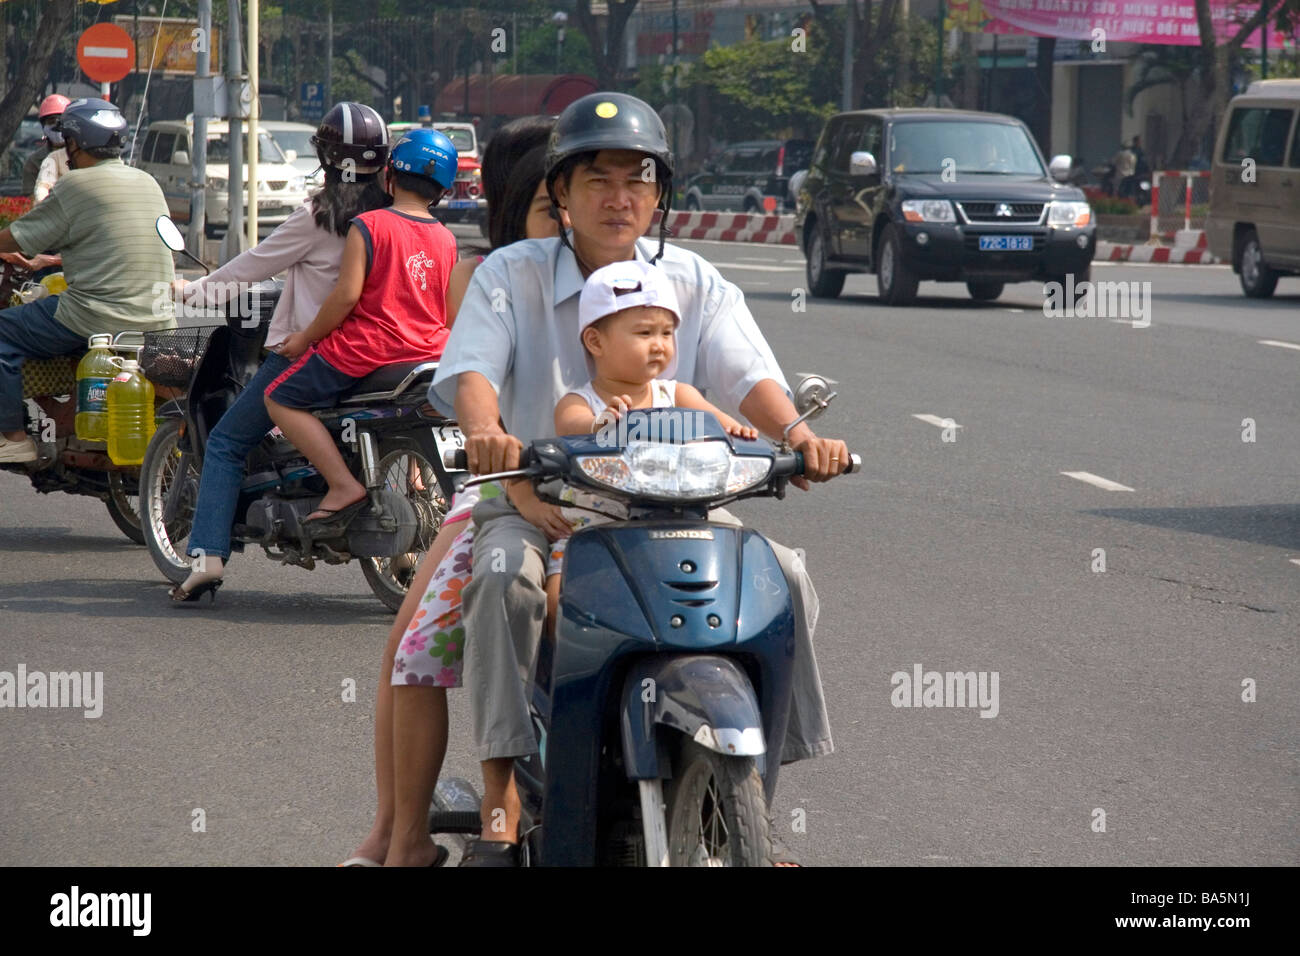 Vietnamese family riding motorbikes in Ho Chi Minh City Vietnam Stock Photo